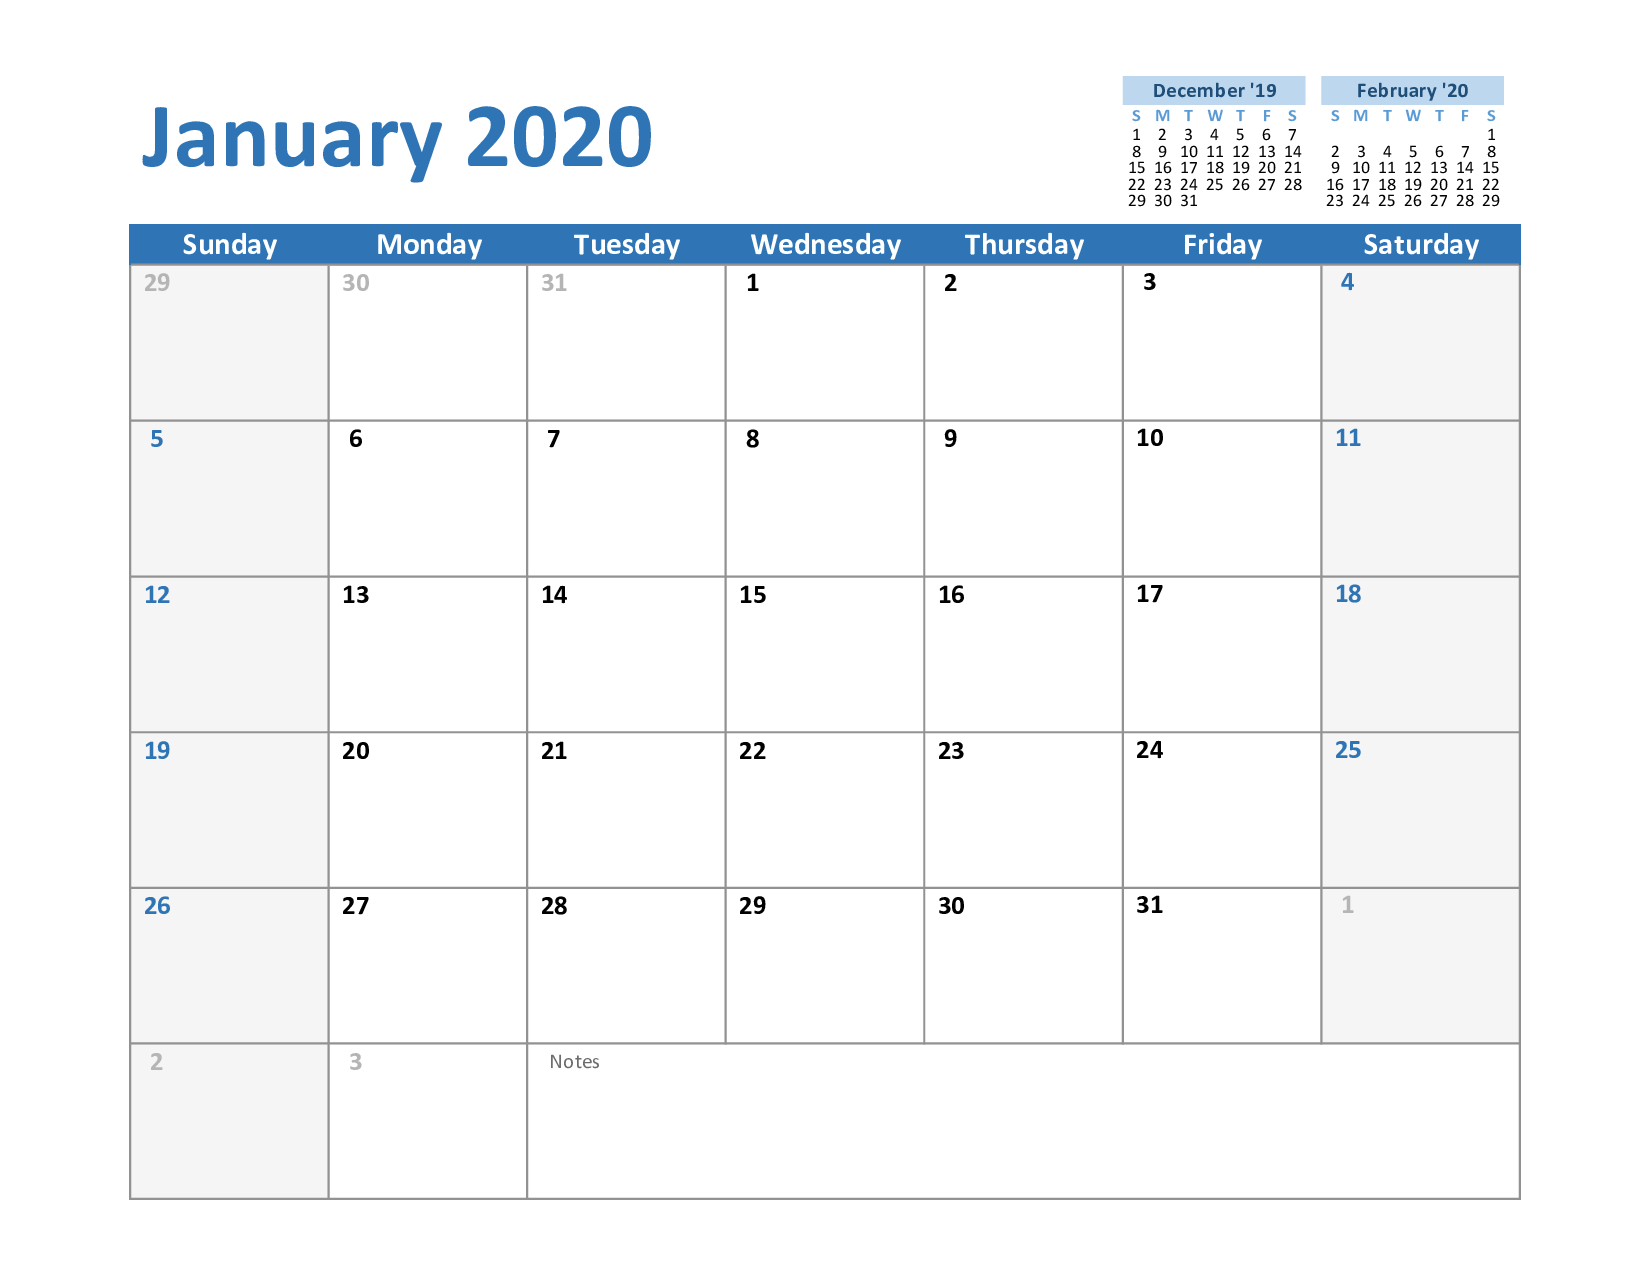 Free Blank January 2020 Calendar Printable in PDF, Word, Excel